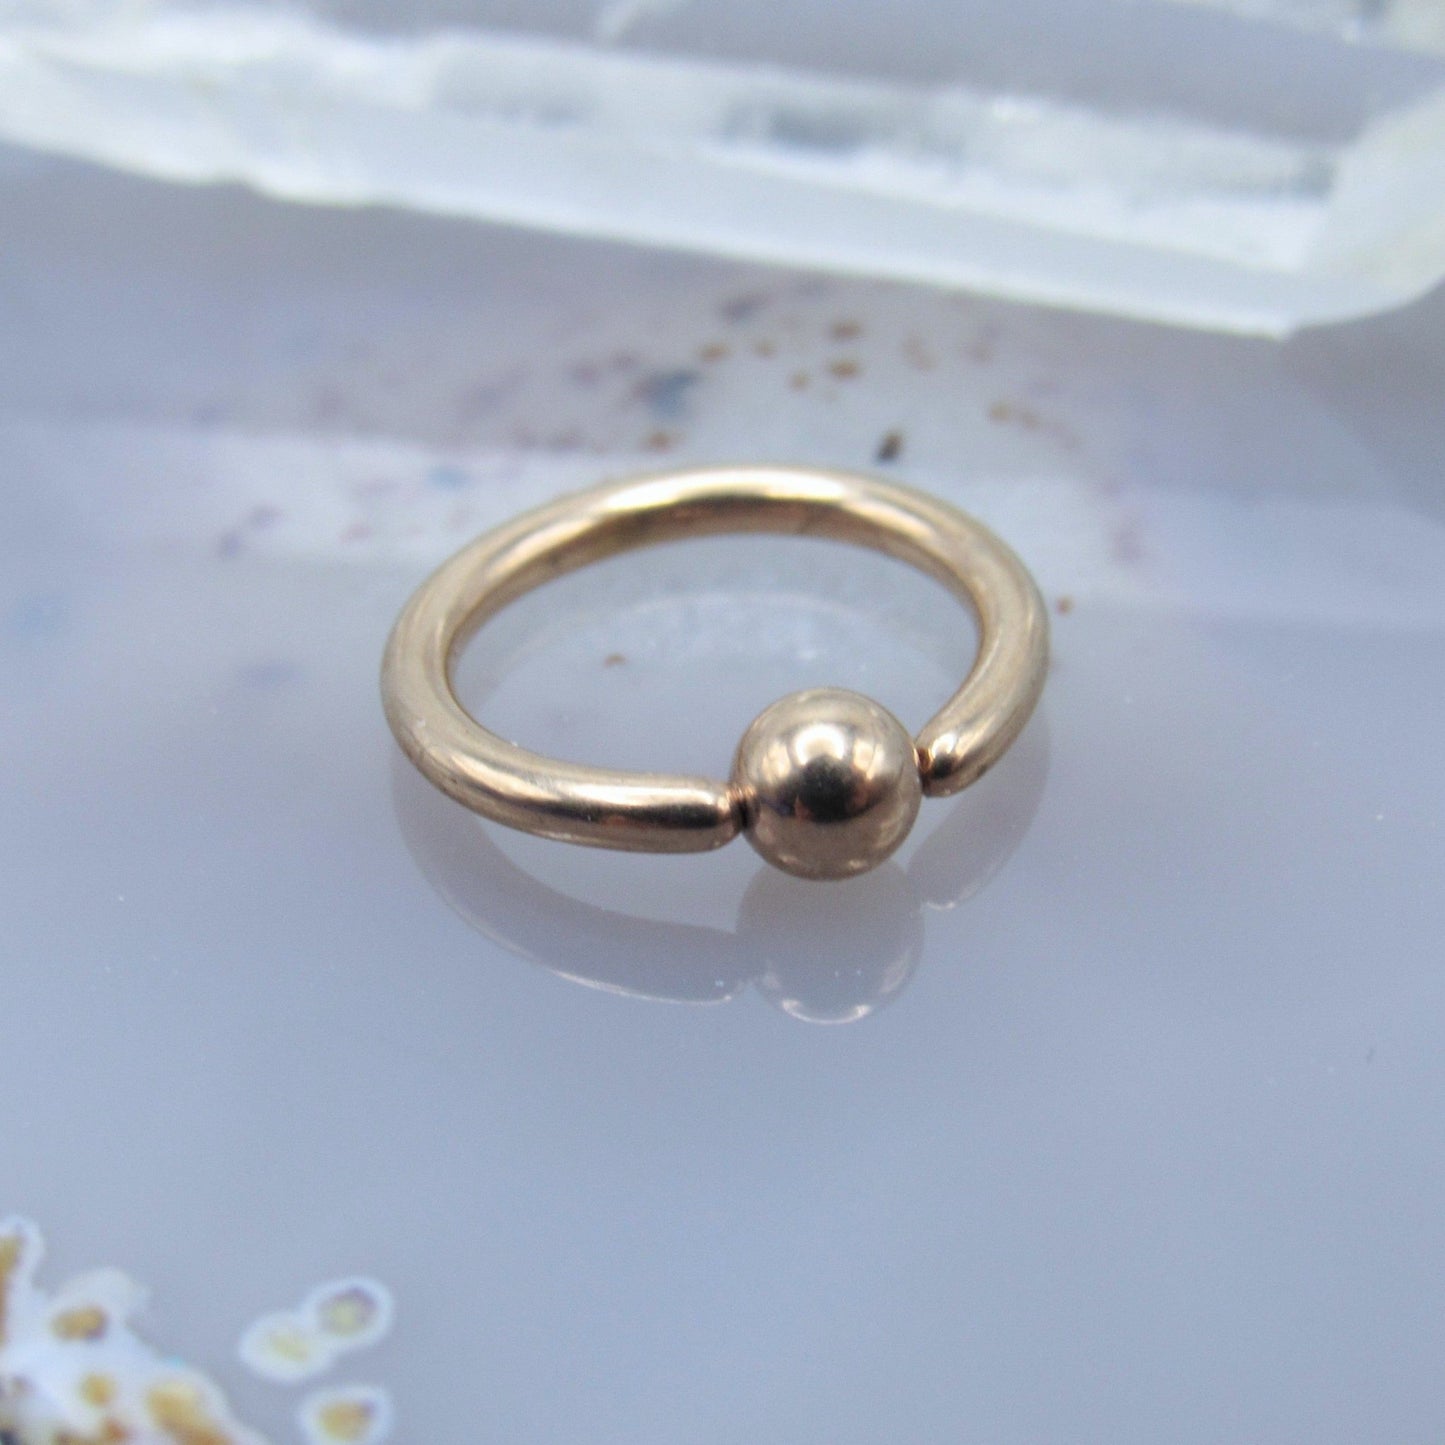 Rose gold fixed bead ring 16g 5/16" diameter ear helix earlobe cartilage piercing body jewelry hoop 3mm bead - Siren Body Jewelry